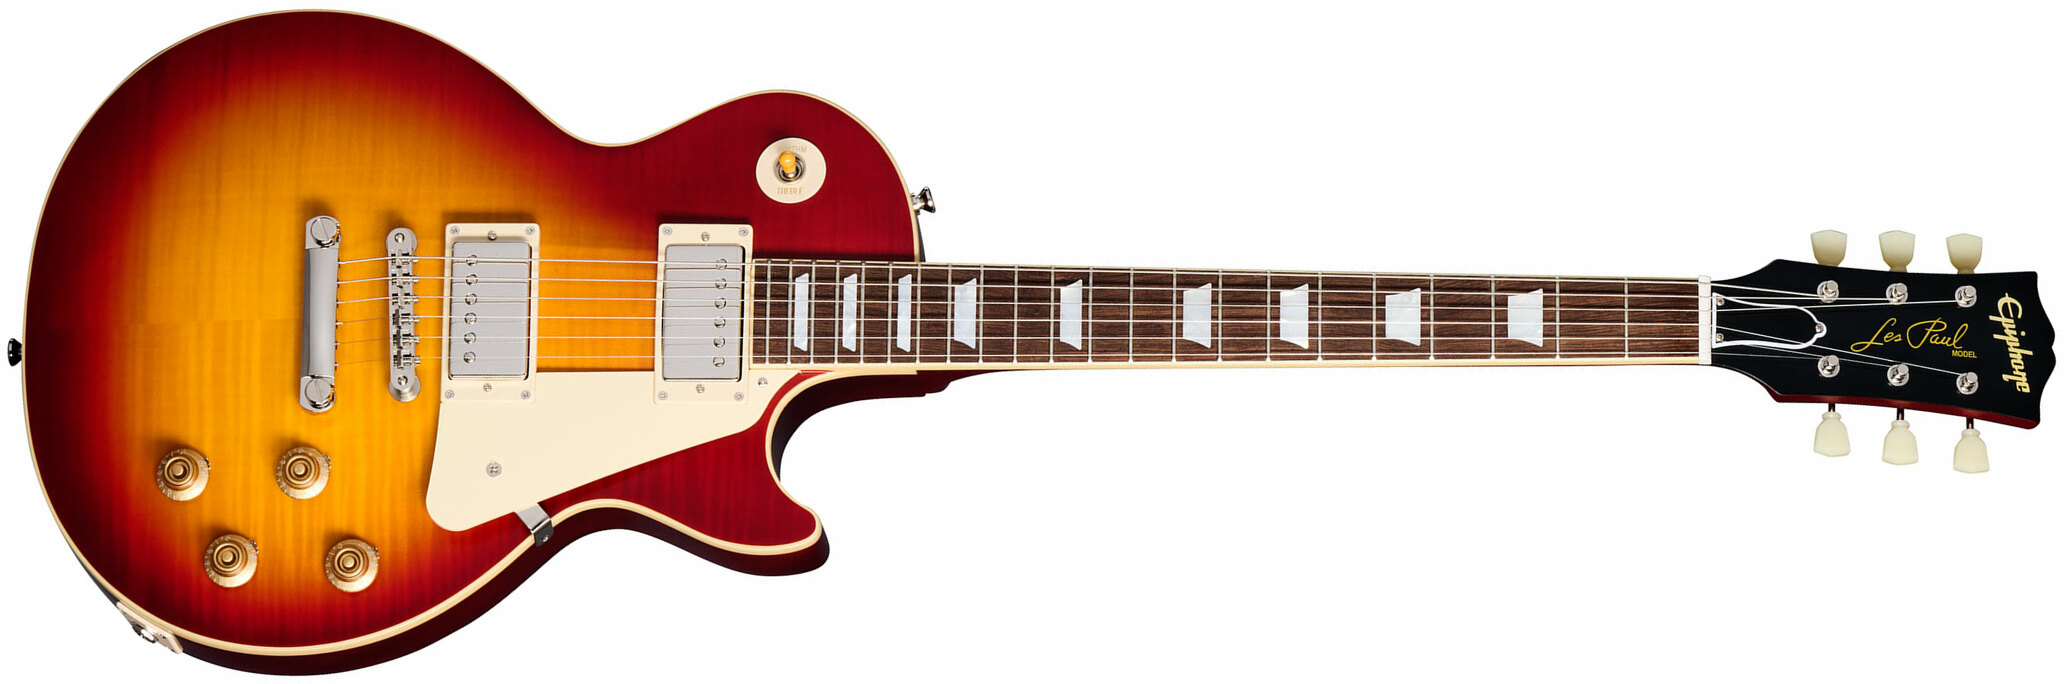 Epiphone 1959 Les Paul Standard Inspired By 2h Gibson Ht Lau - Vos Factory Burst - Guitarra eléctrica de corte único. - Main picture